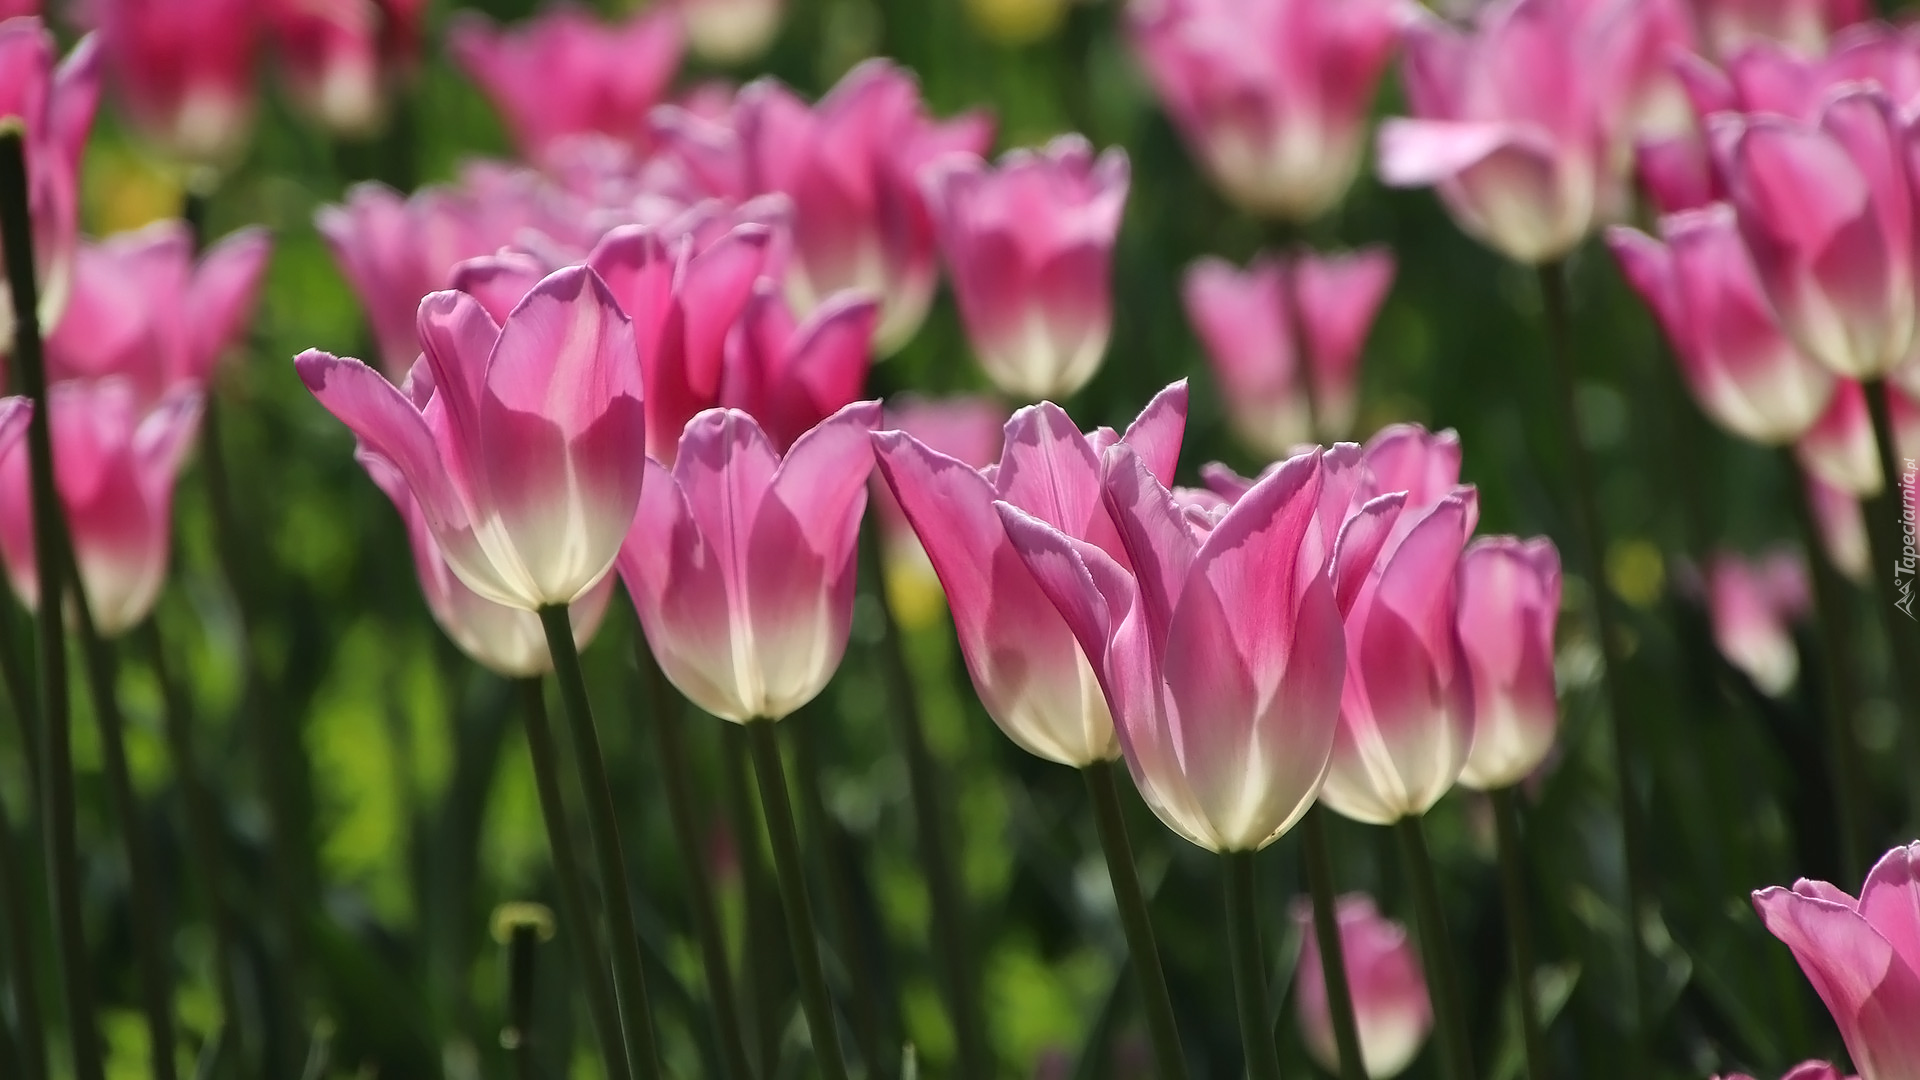 Kwiaty, Tulipany, Różowo-białe